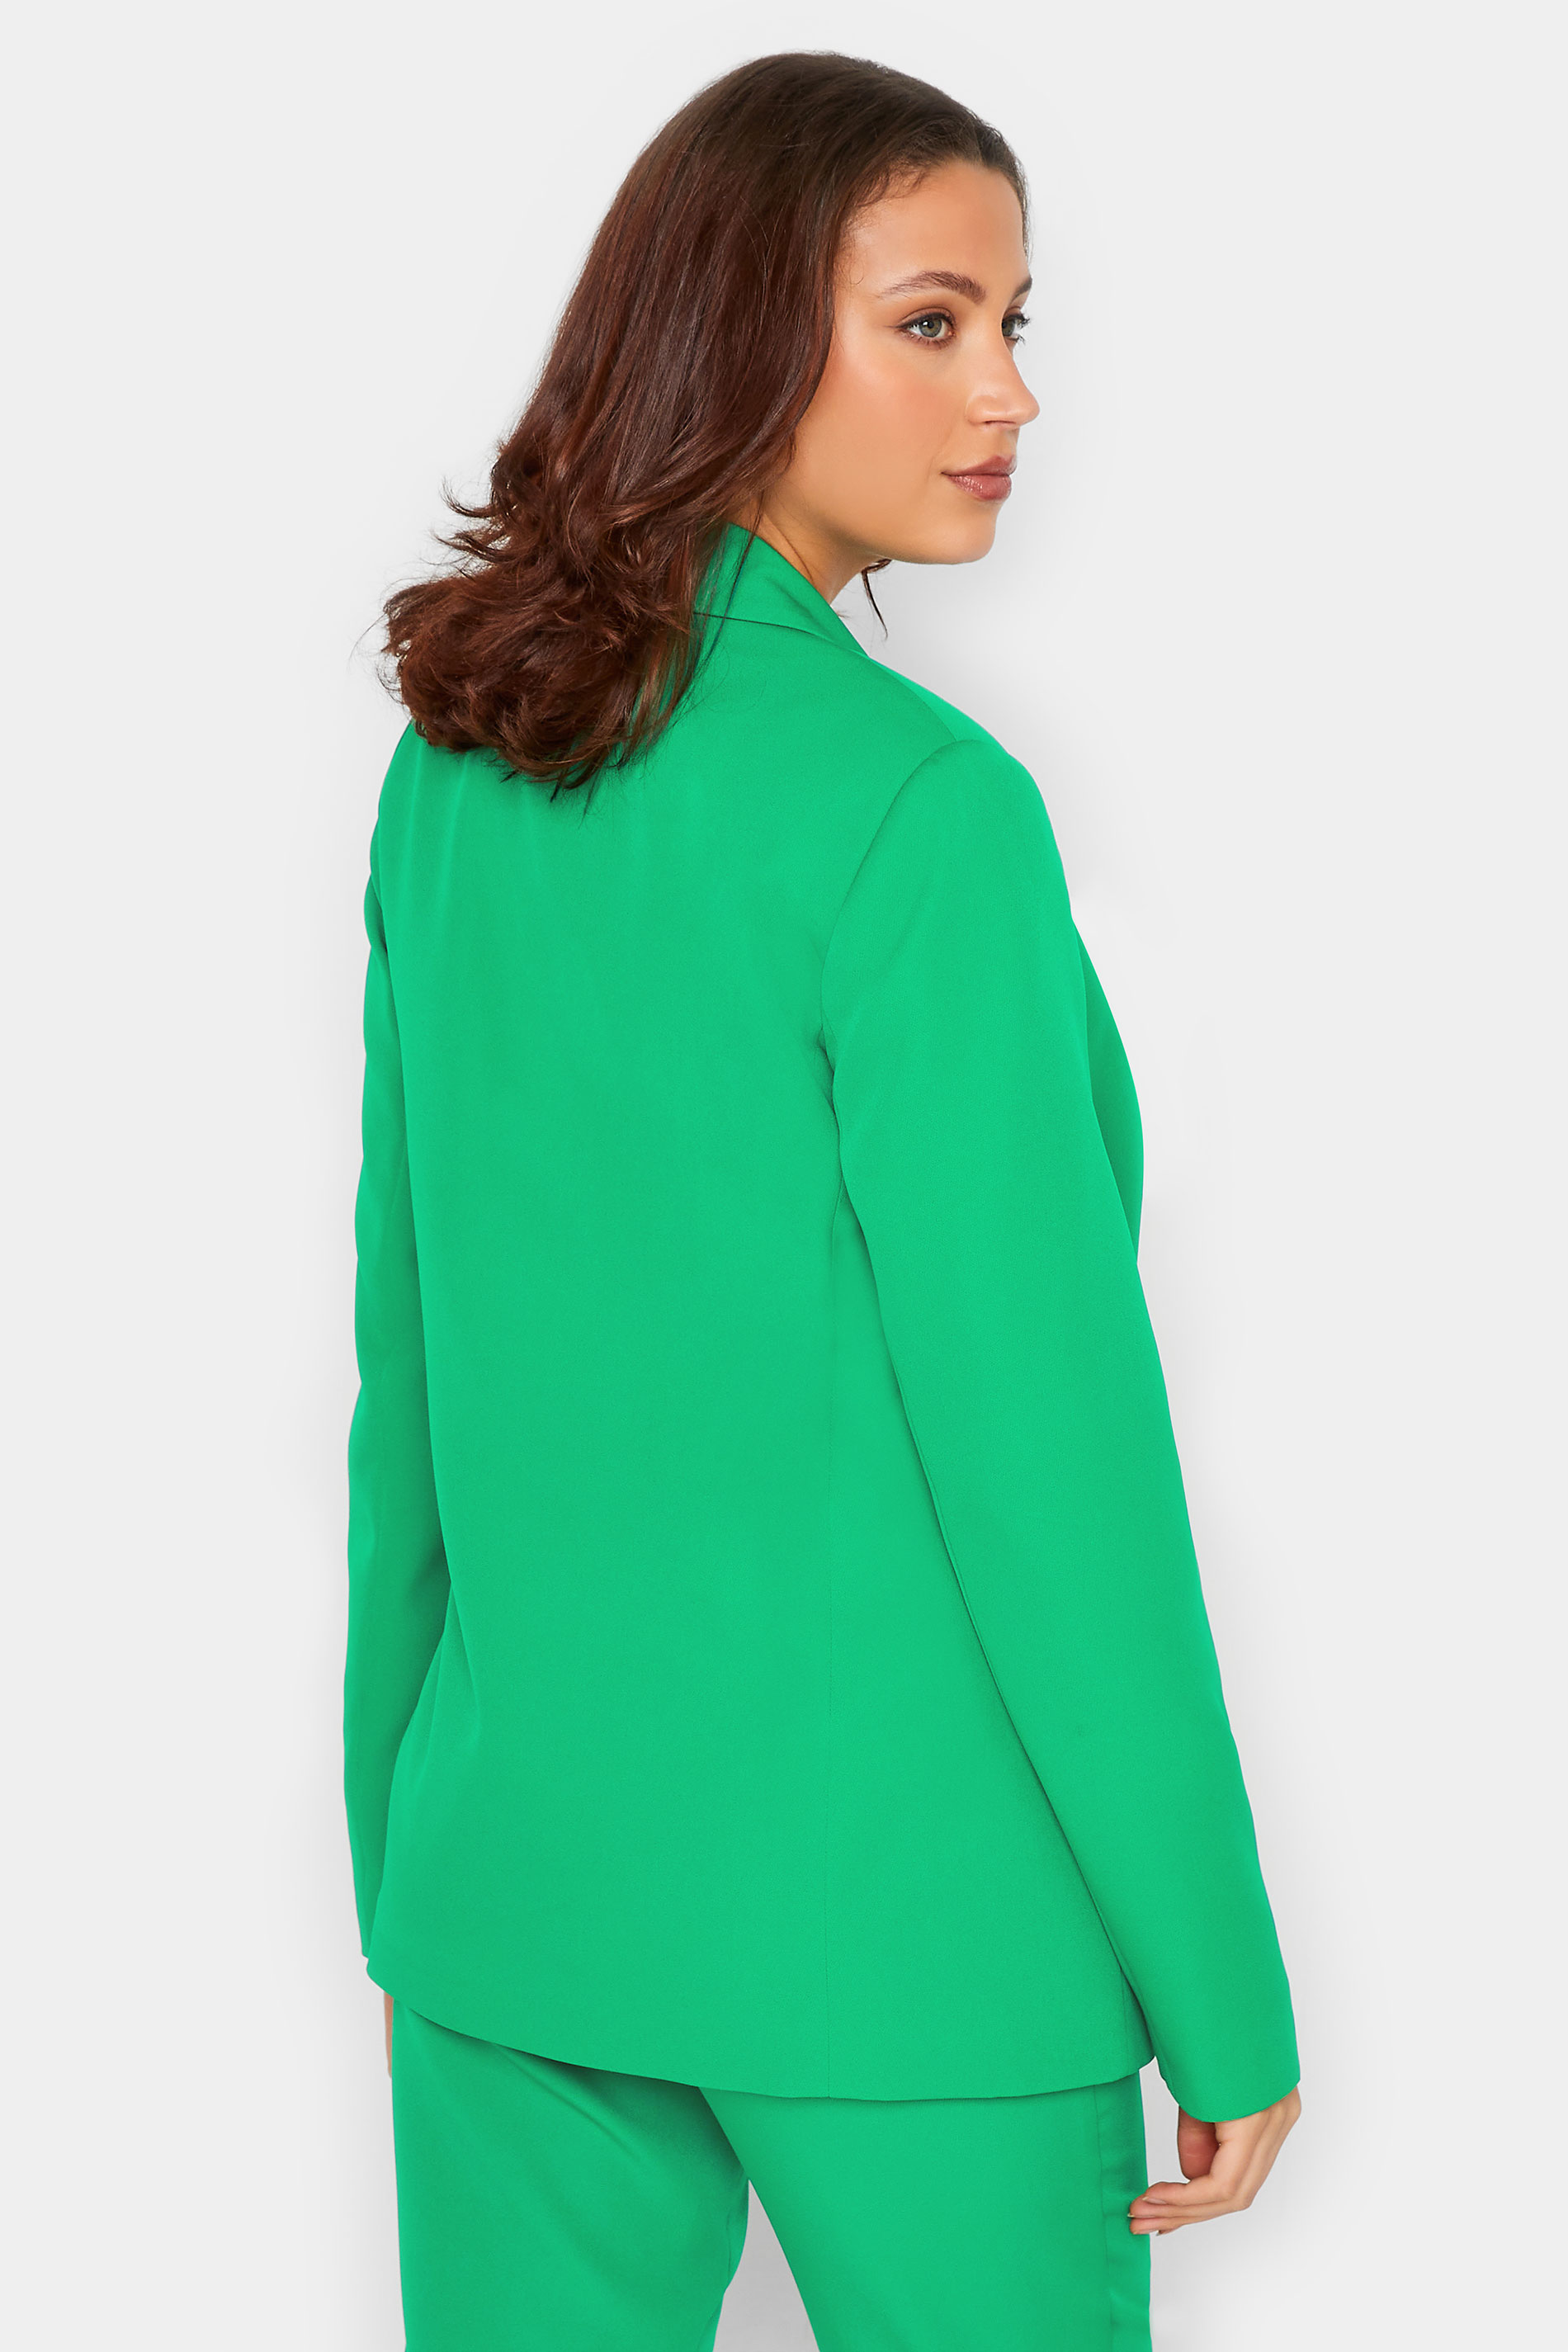 LTS Tall Women's Green Tailored Blazer | Long Tall Sally  3